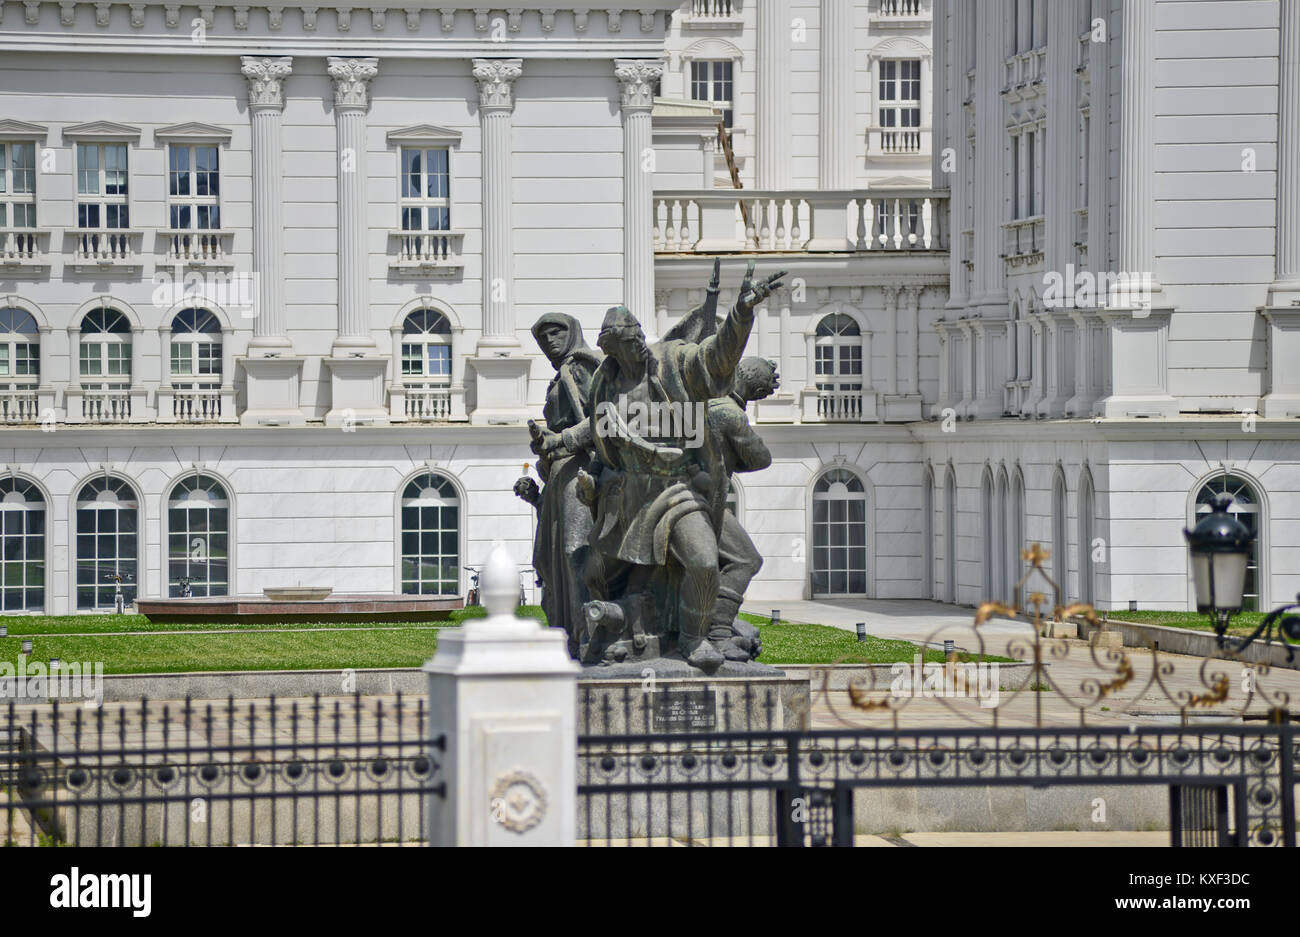 Haus der Regierung von Mazedonien (Vlada Na Republika Makedonija), Skopje Stockfoto